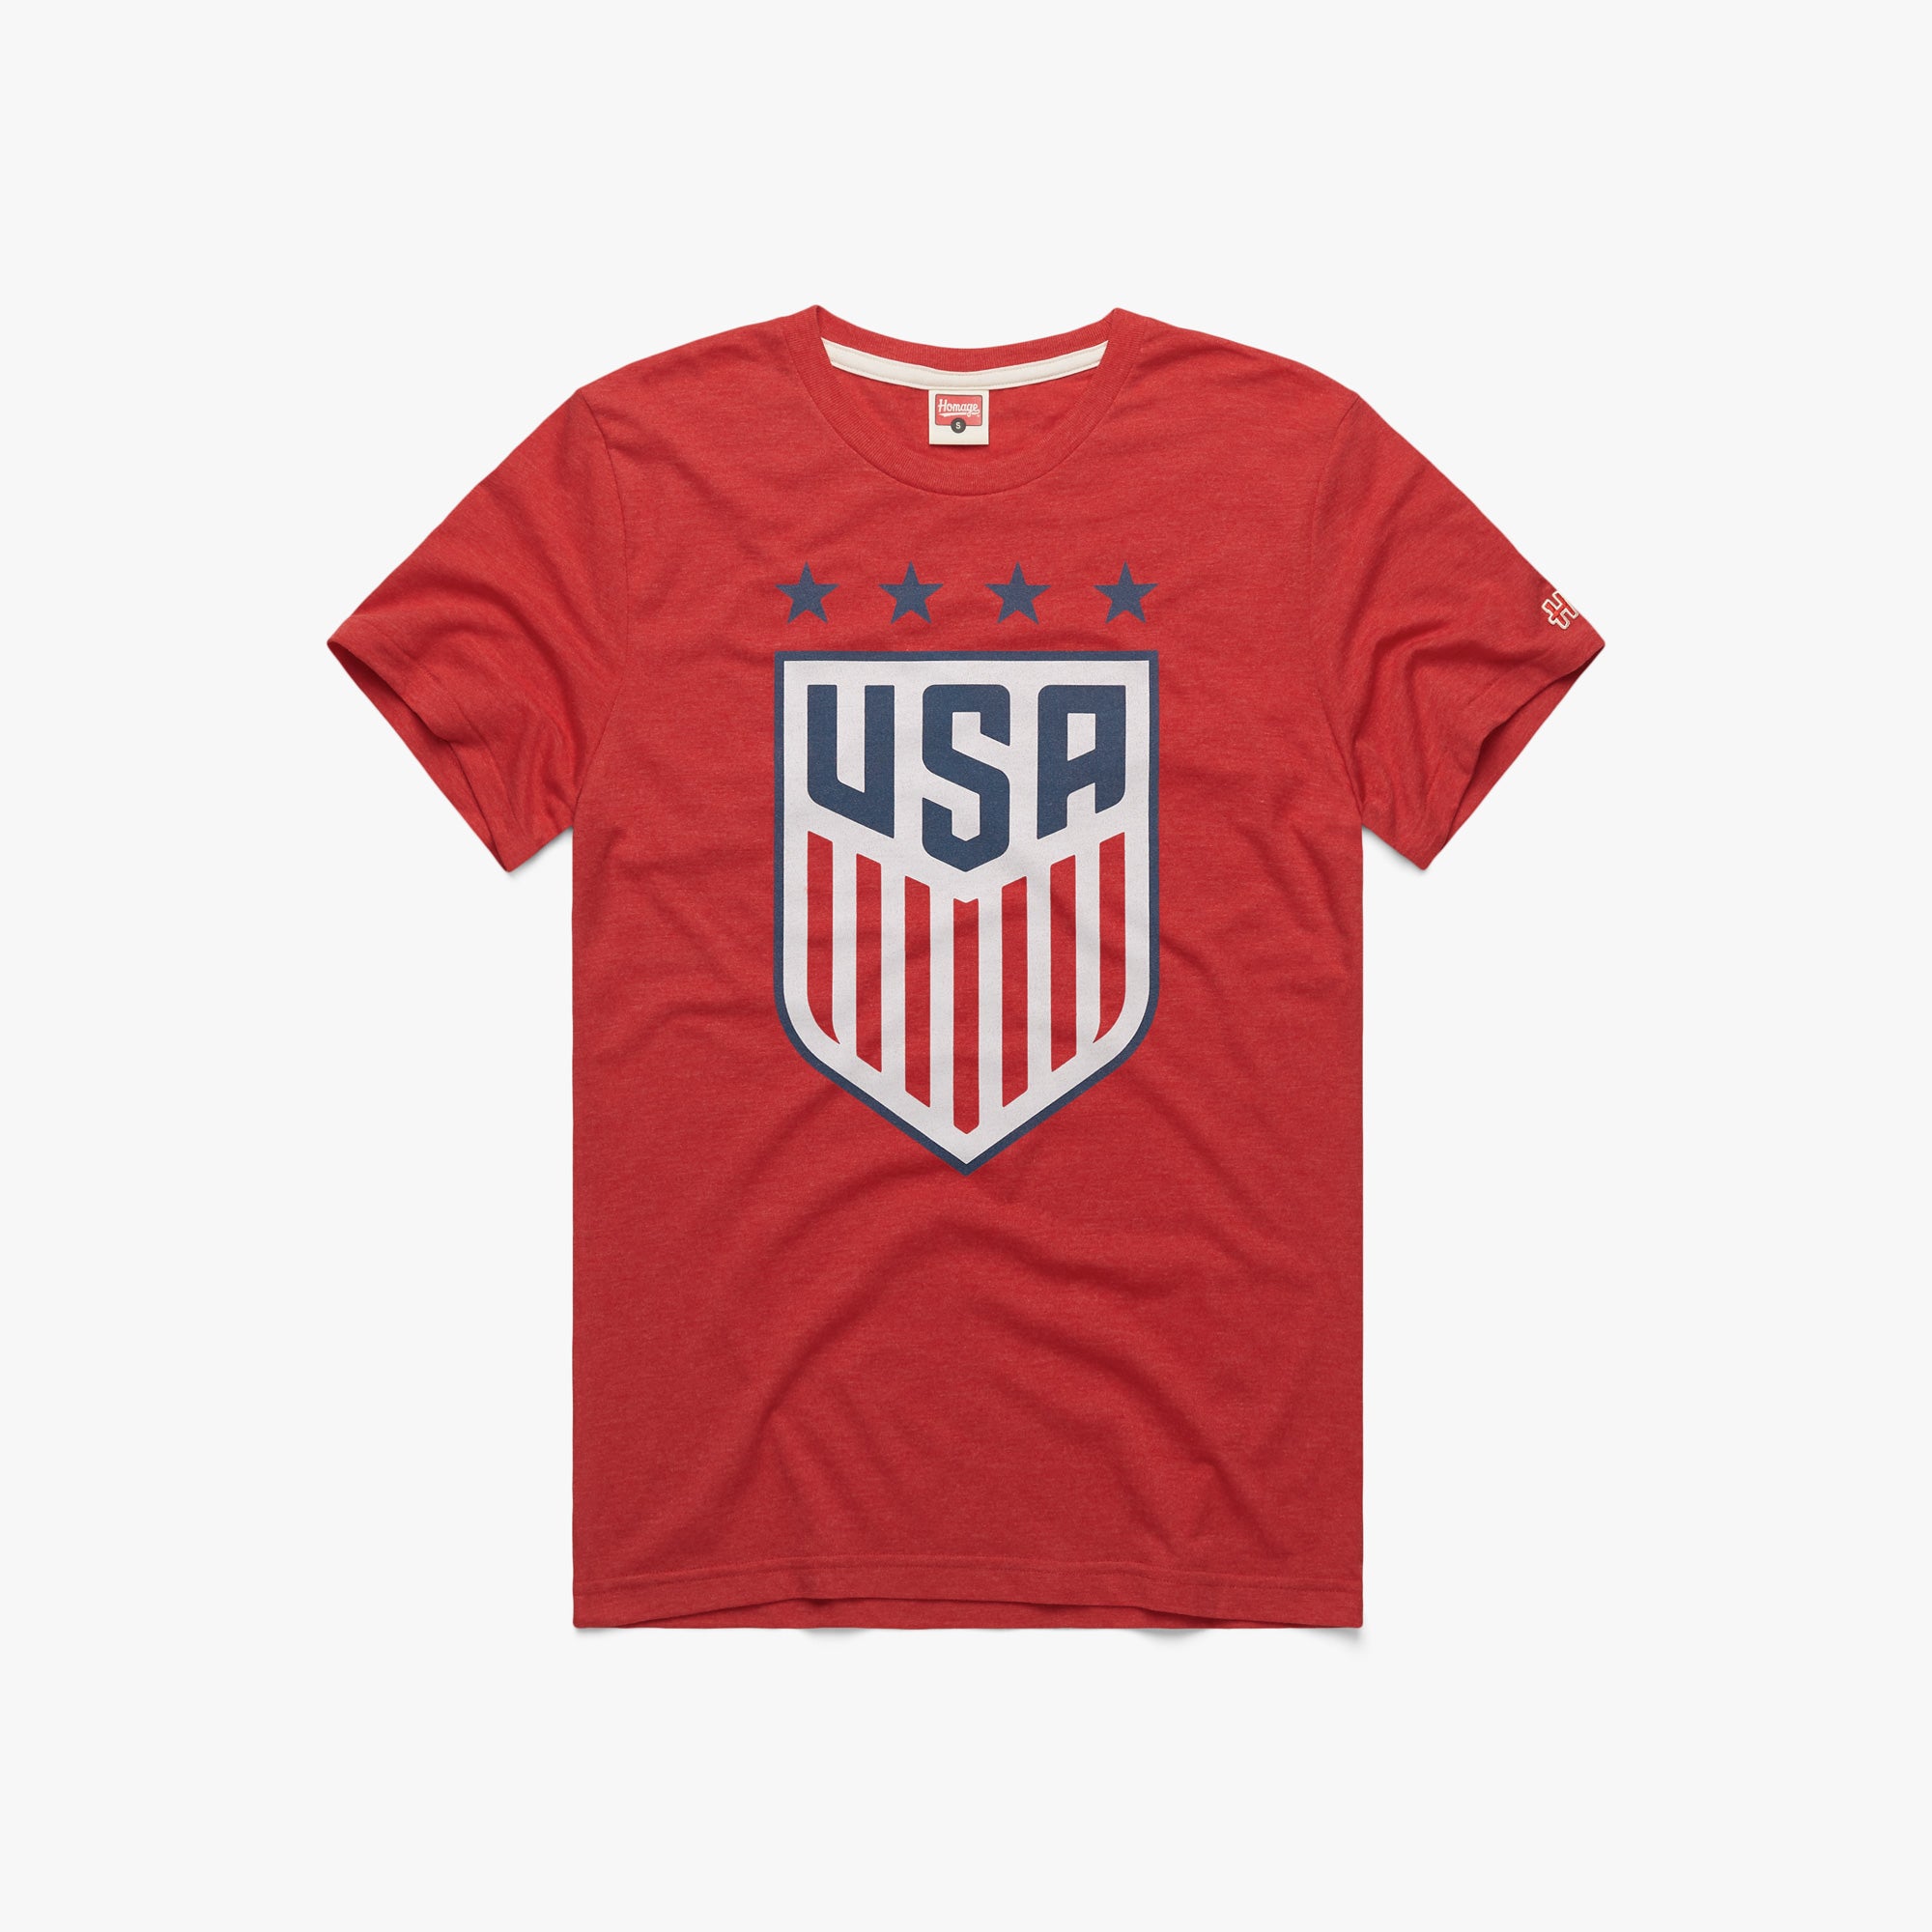 US soccer apparel